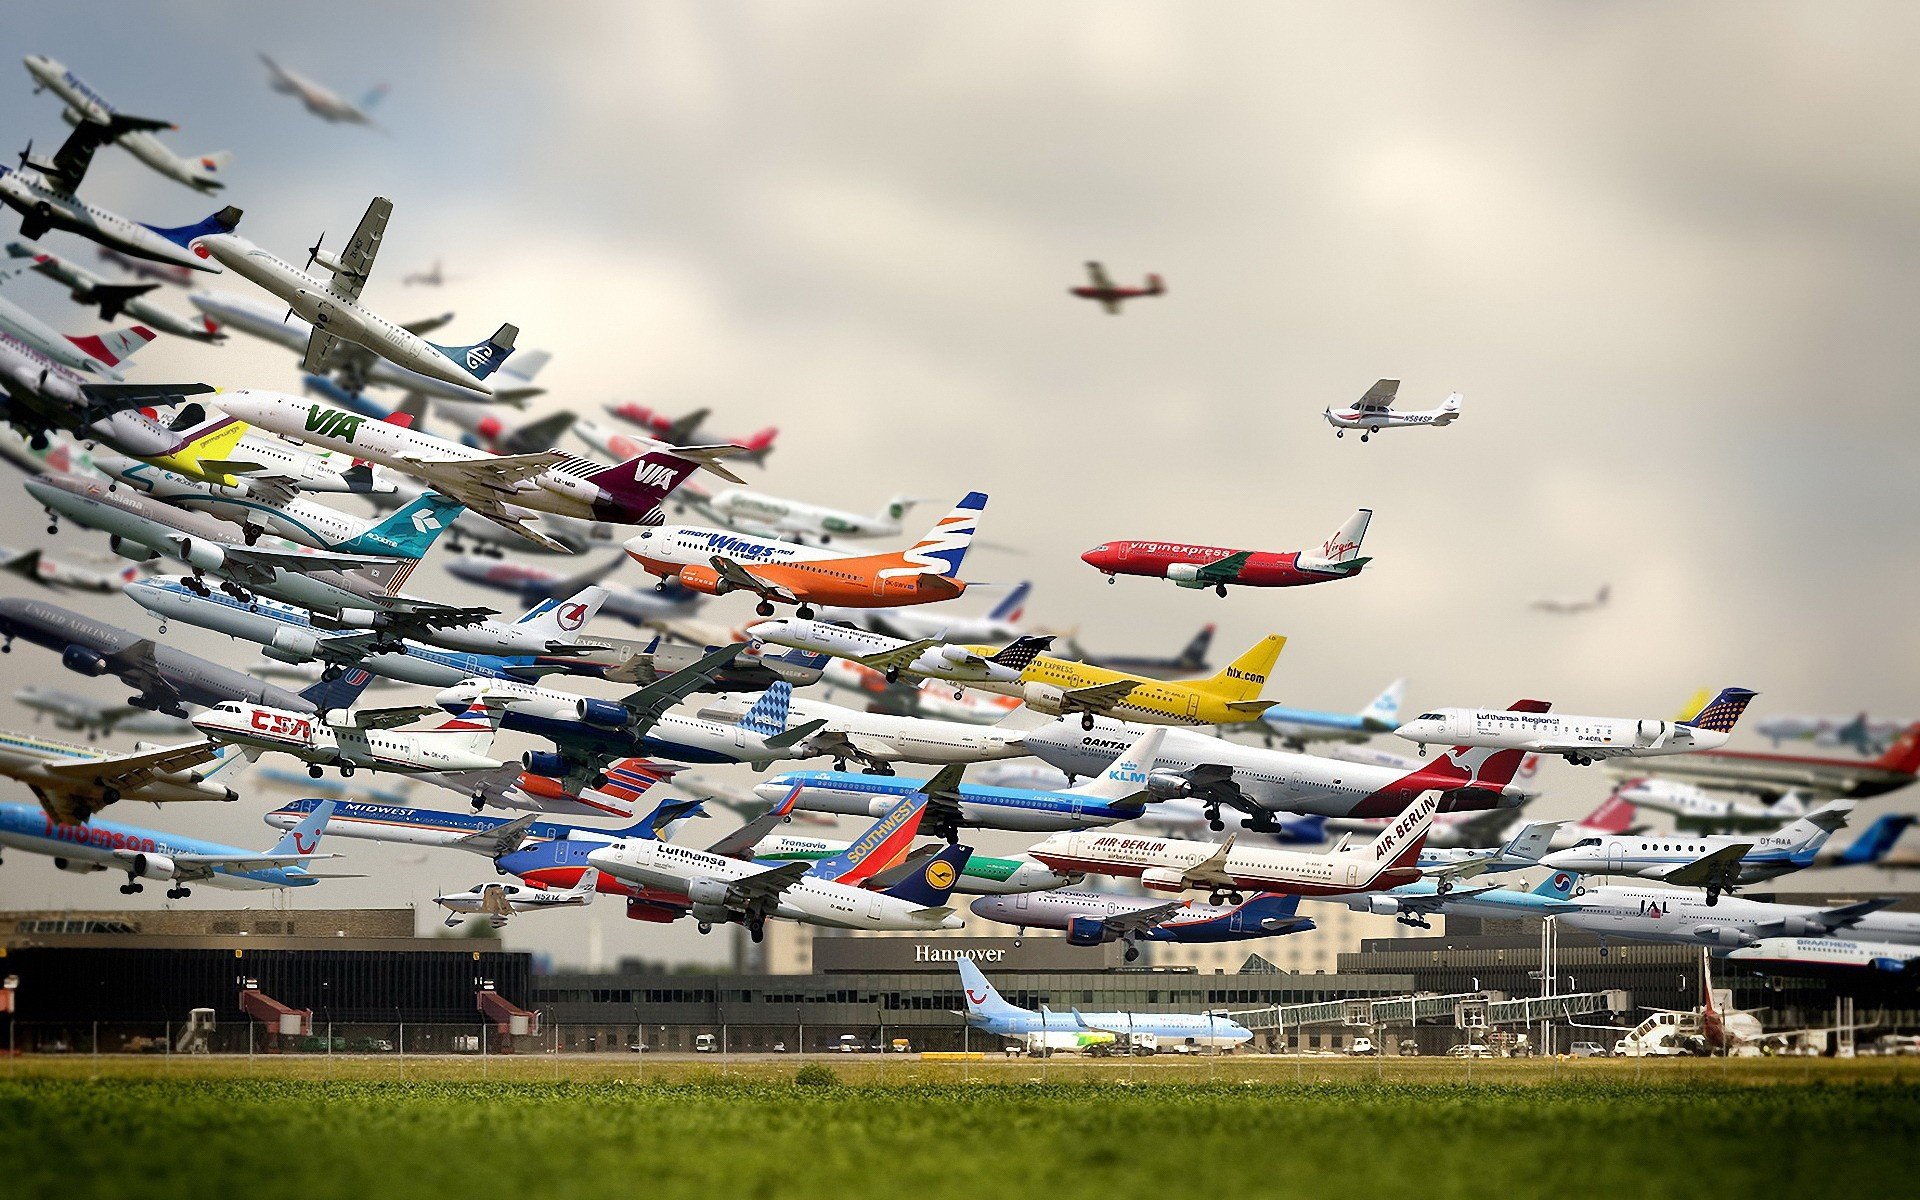 airplane, Germany, Airport, Aircraft, Passenger aircraft, Hanover Wallpaper